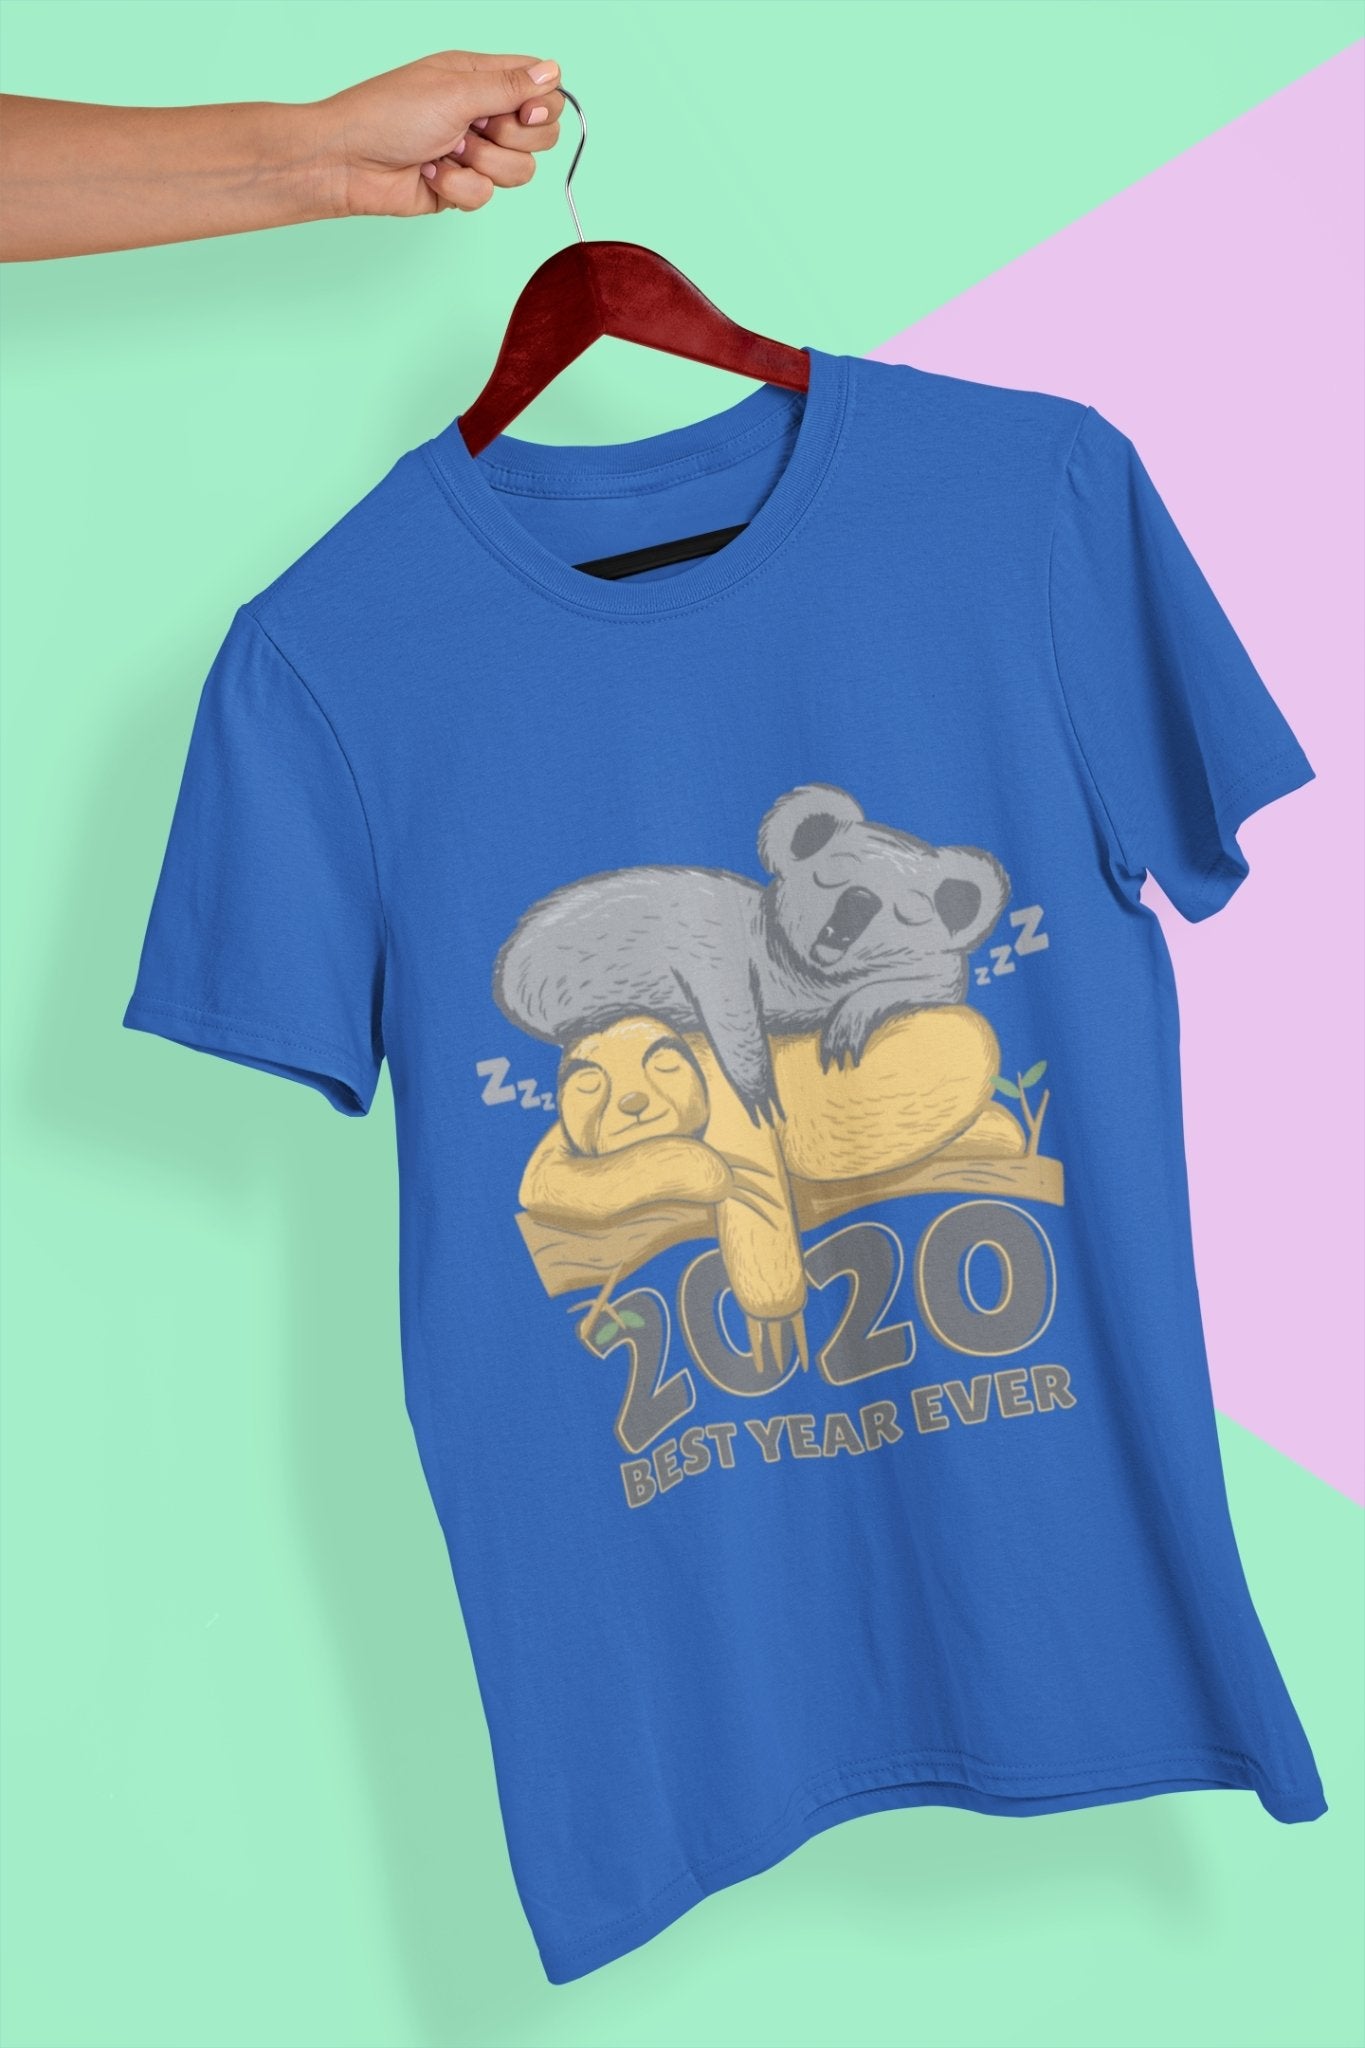 2020 Best Year Ever Mens Half Sleeves T-shirt- FunkyTeesClub - Funky Tees Club